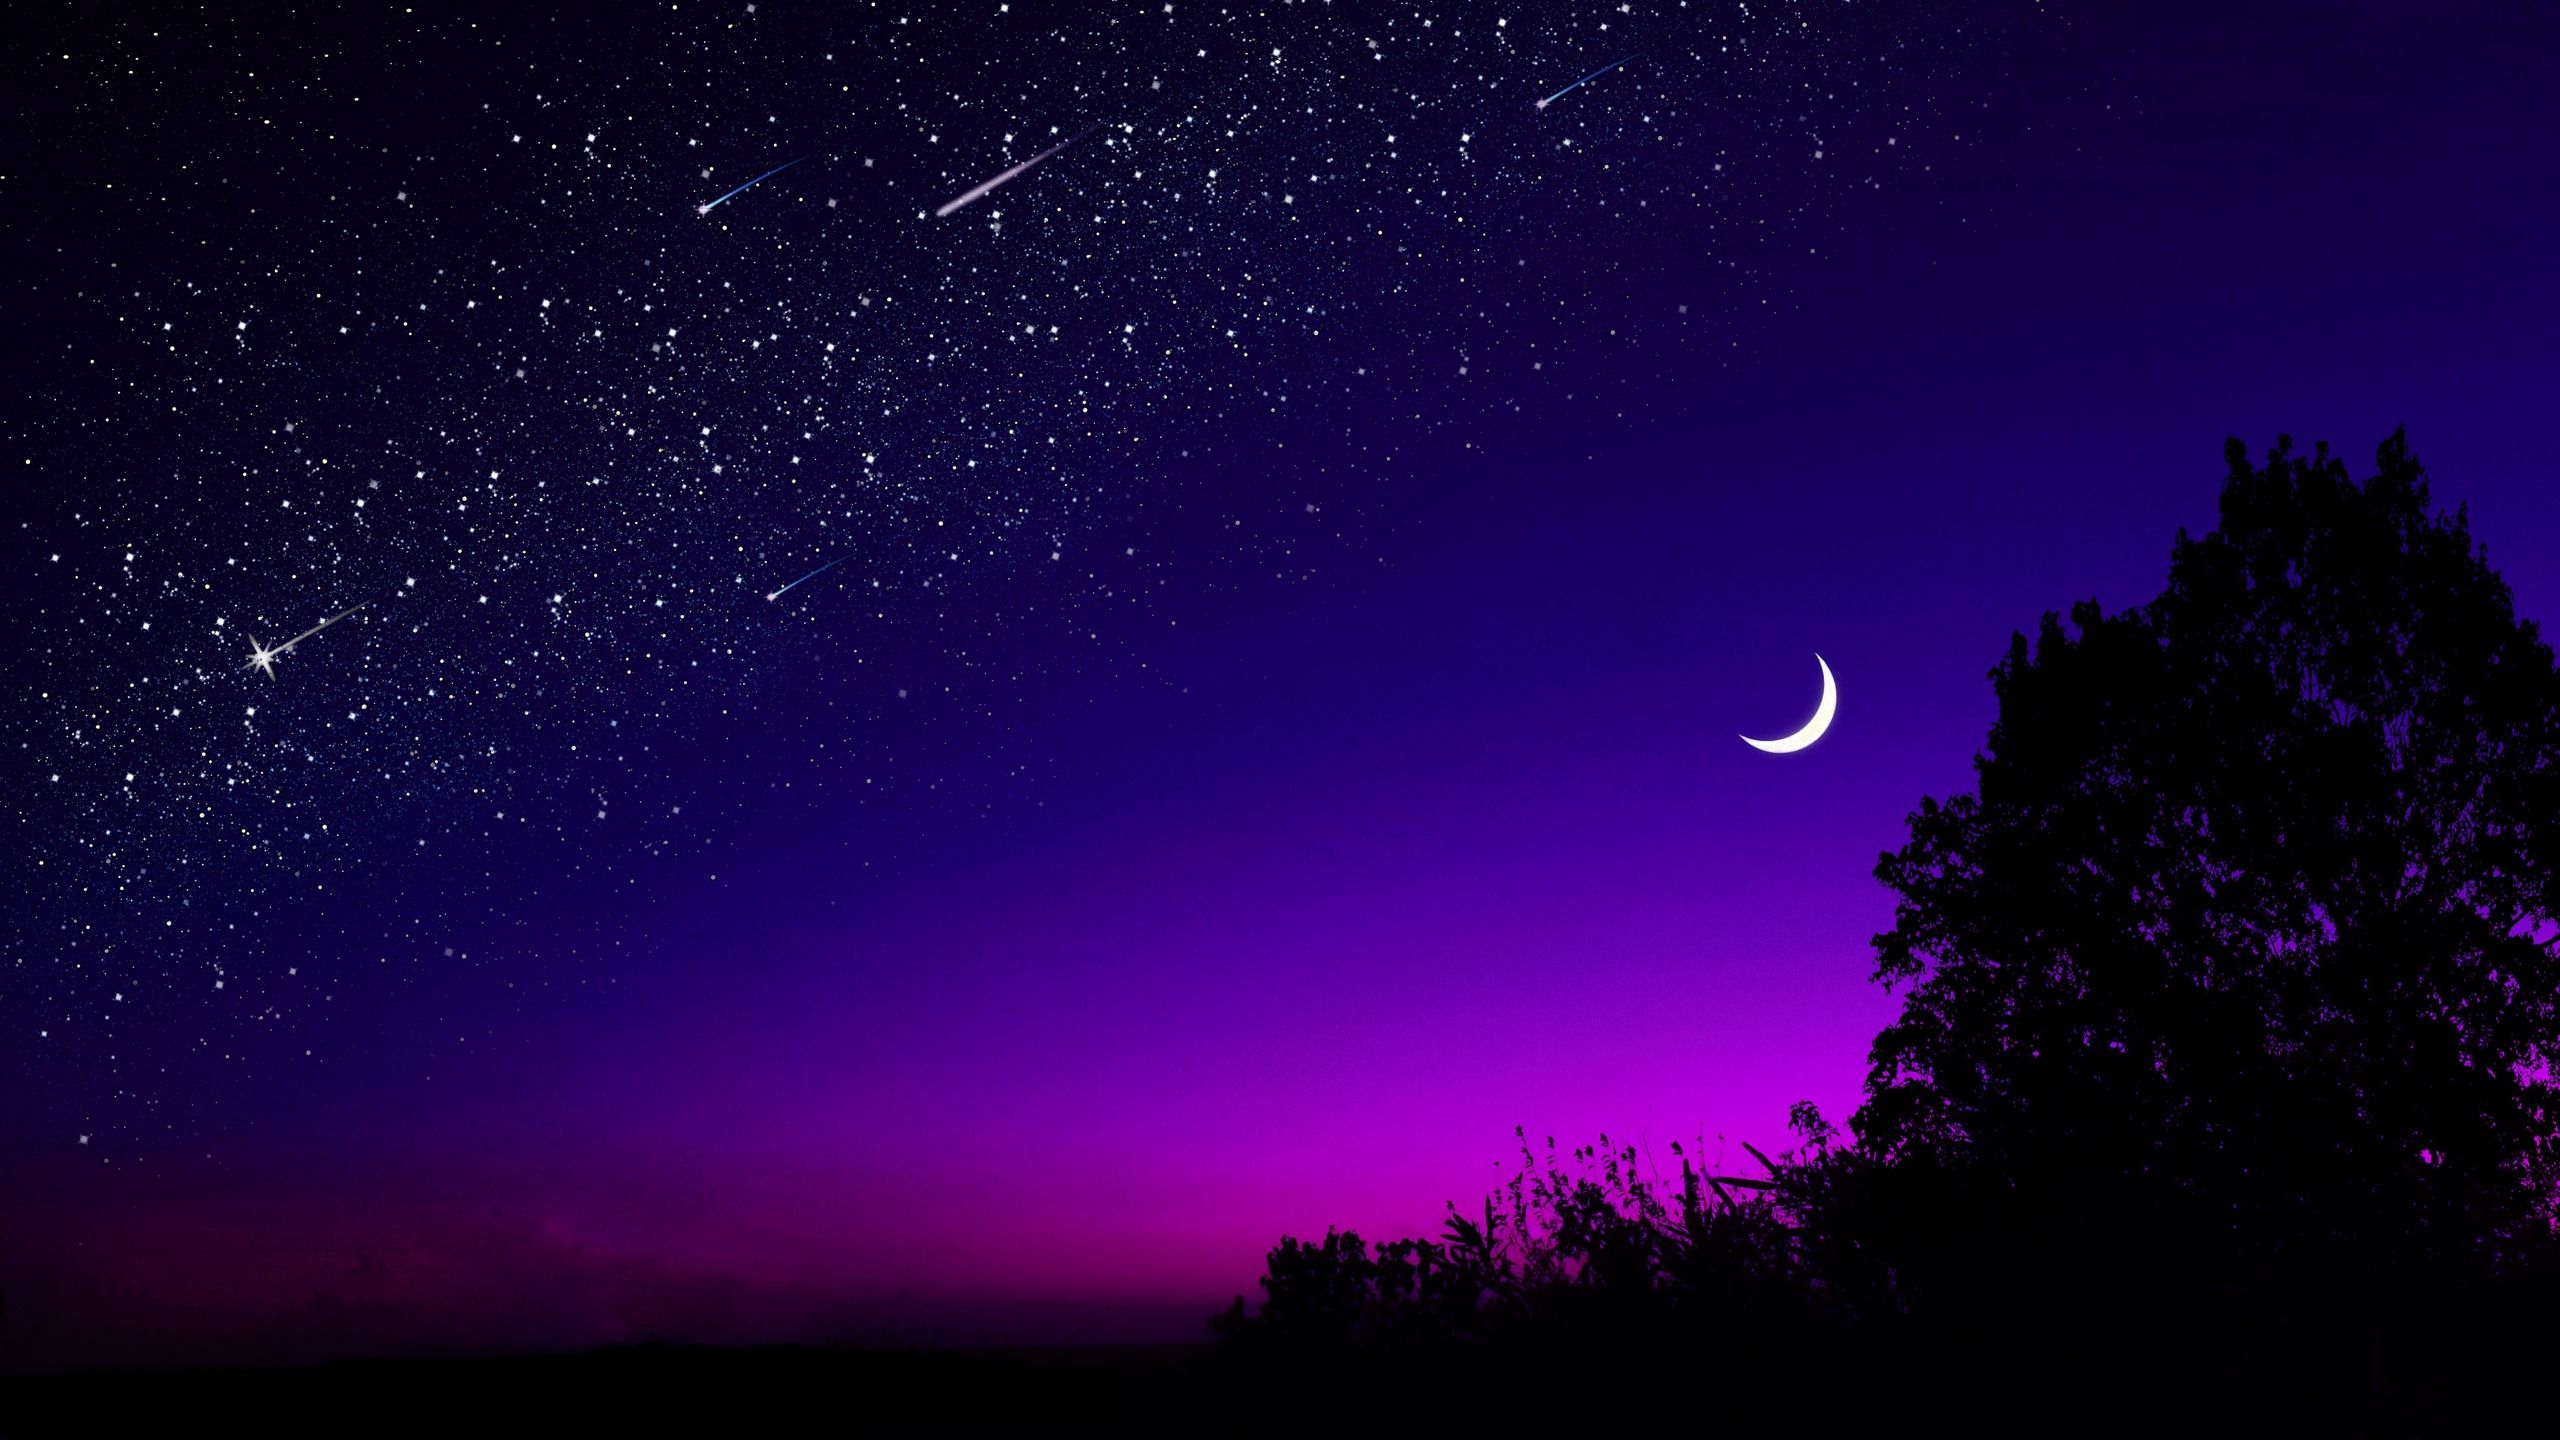 Download wallpaper 2560x1440 moon, tree, starry sky, night, stars